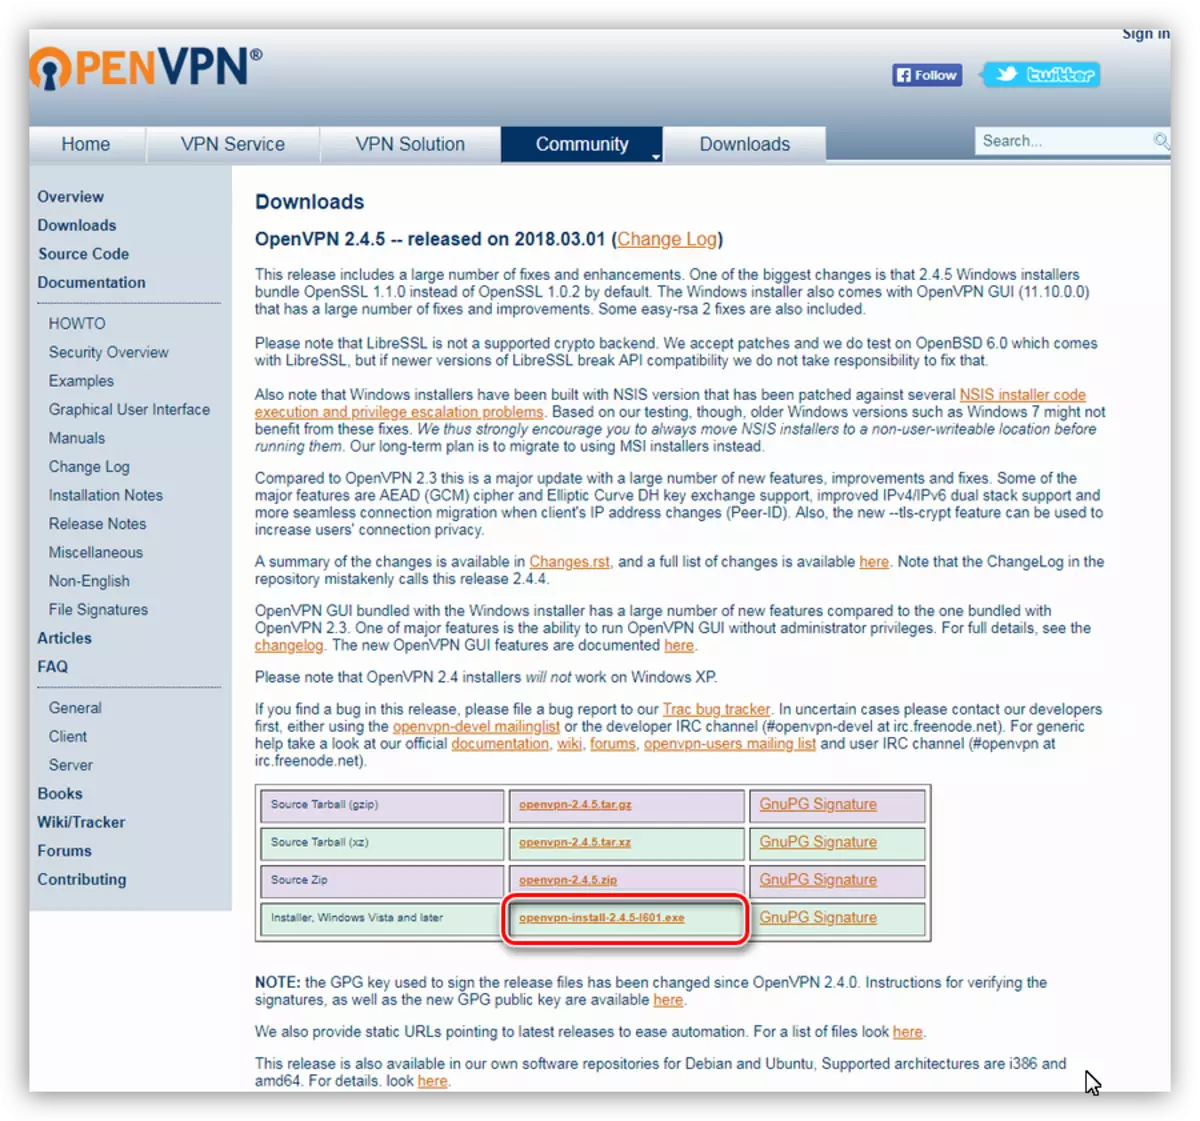 Cargando o programa OpenVPN desde o sitio oficial dos desenvolvedores